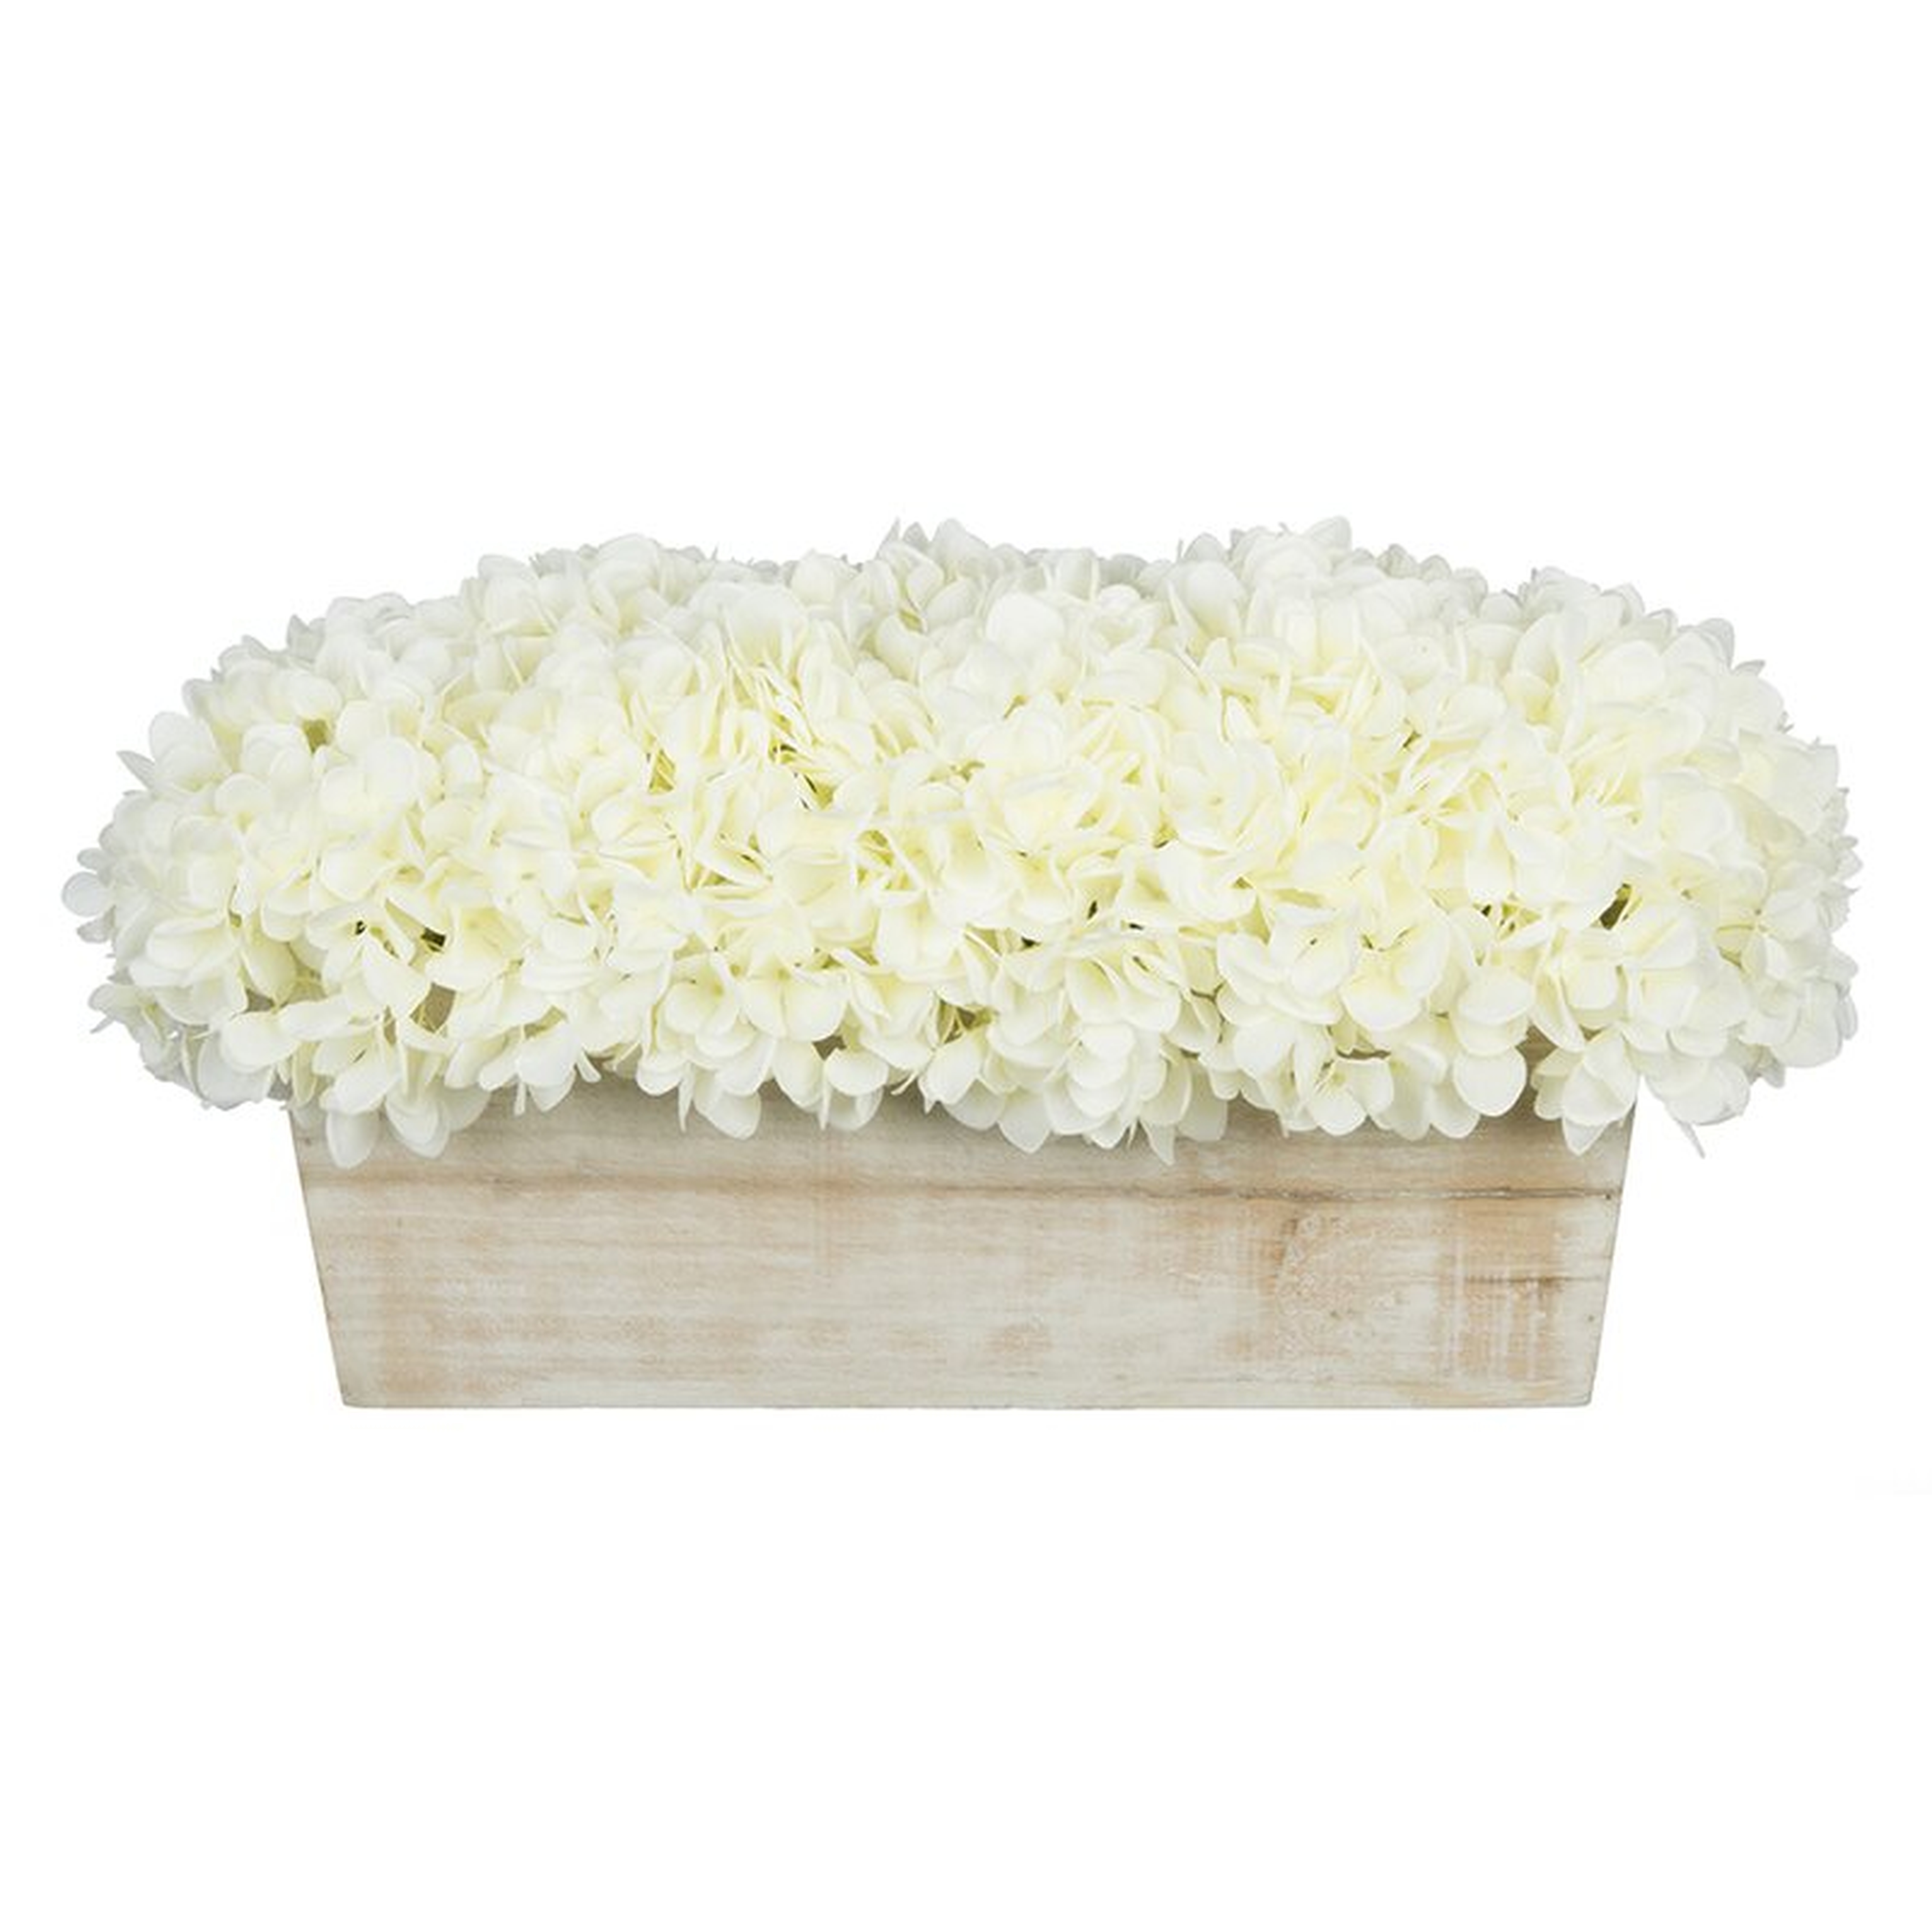 Hydrangeas Floral Arrangement in Planter - White - Wayfair